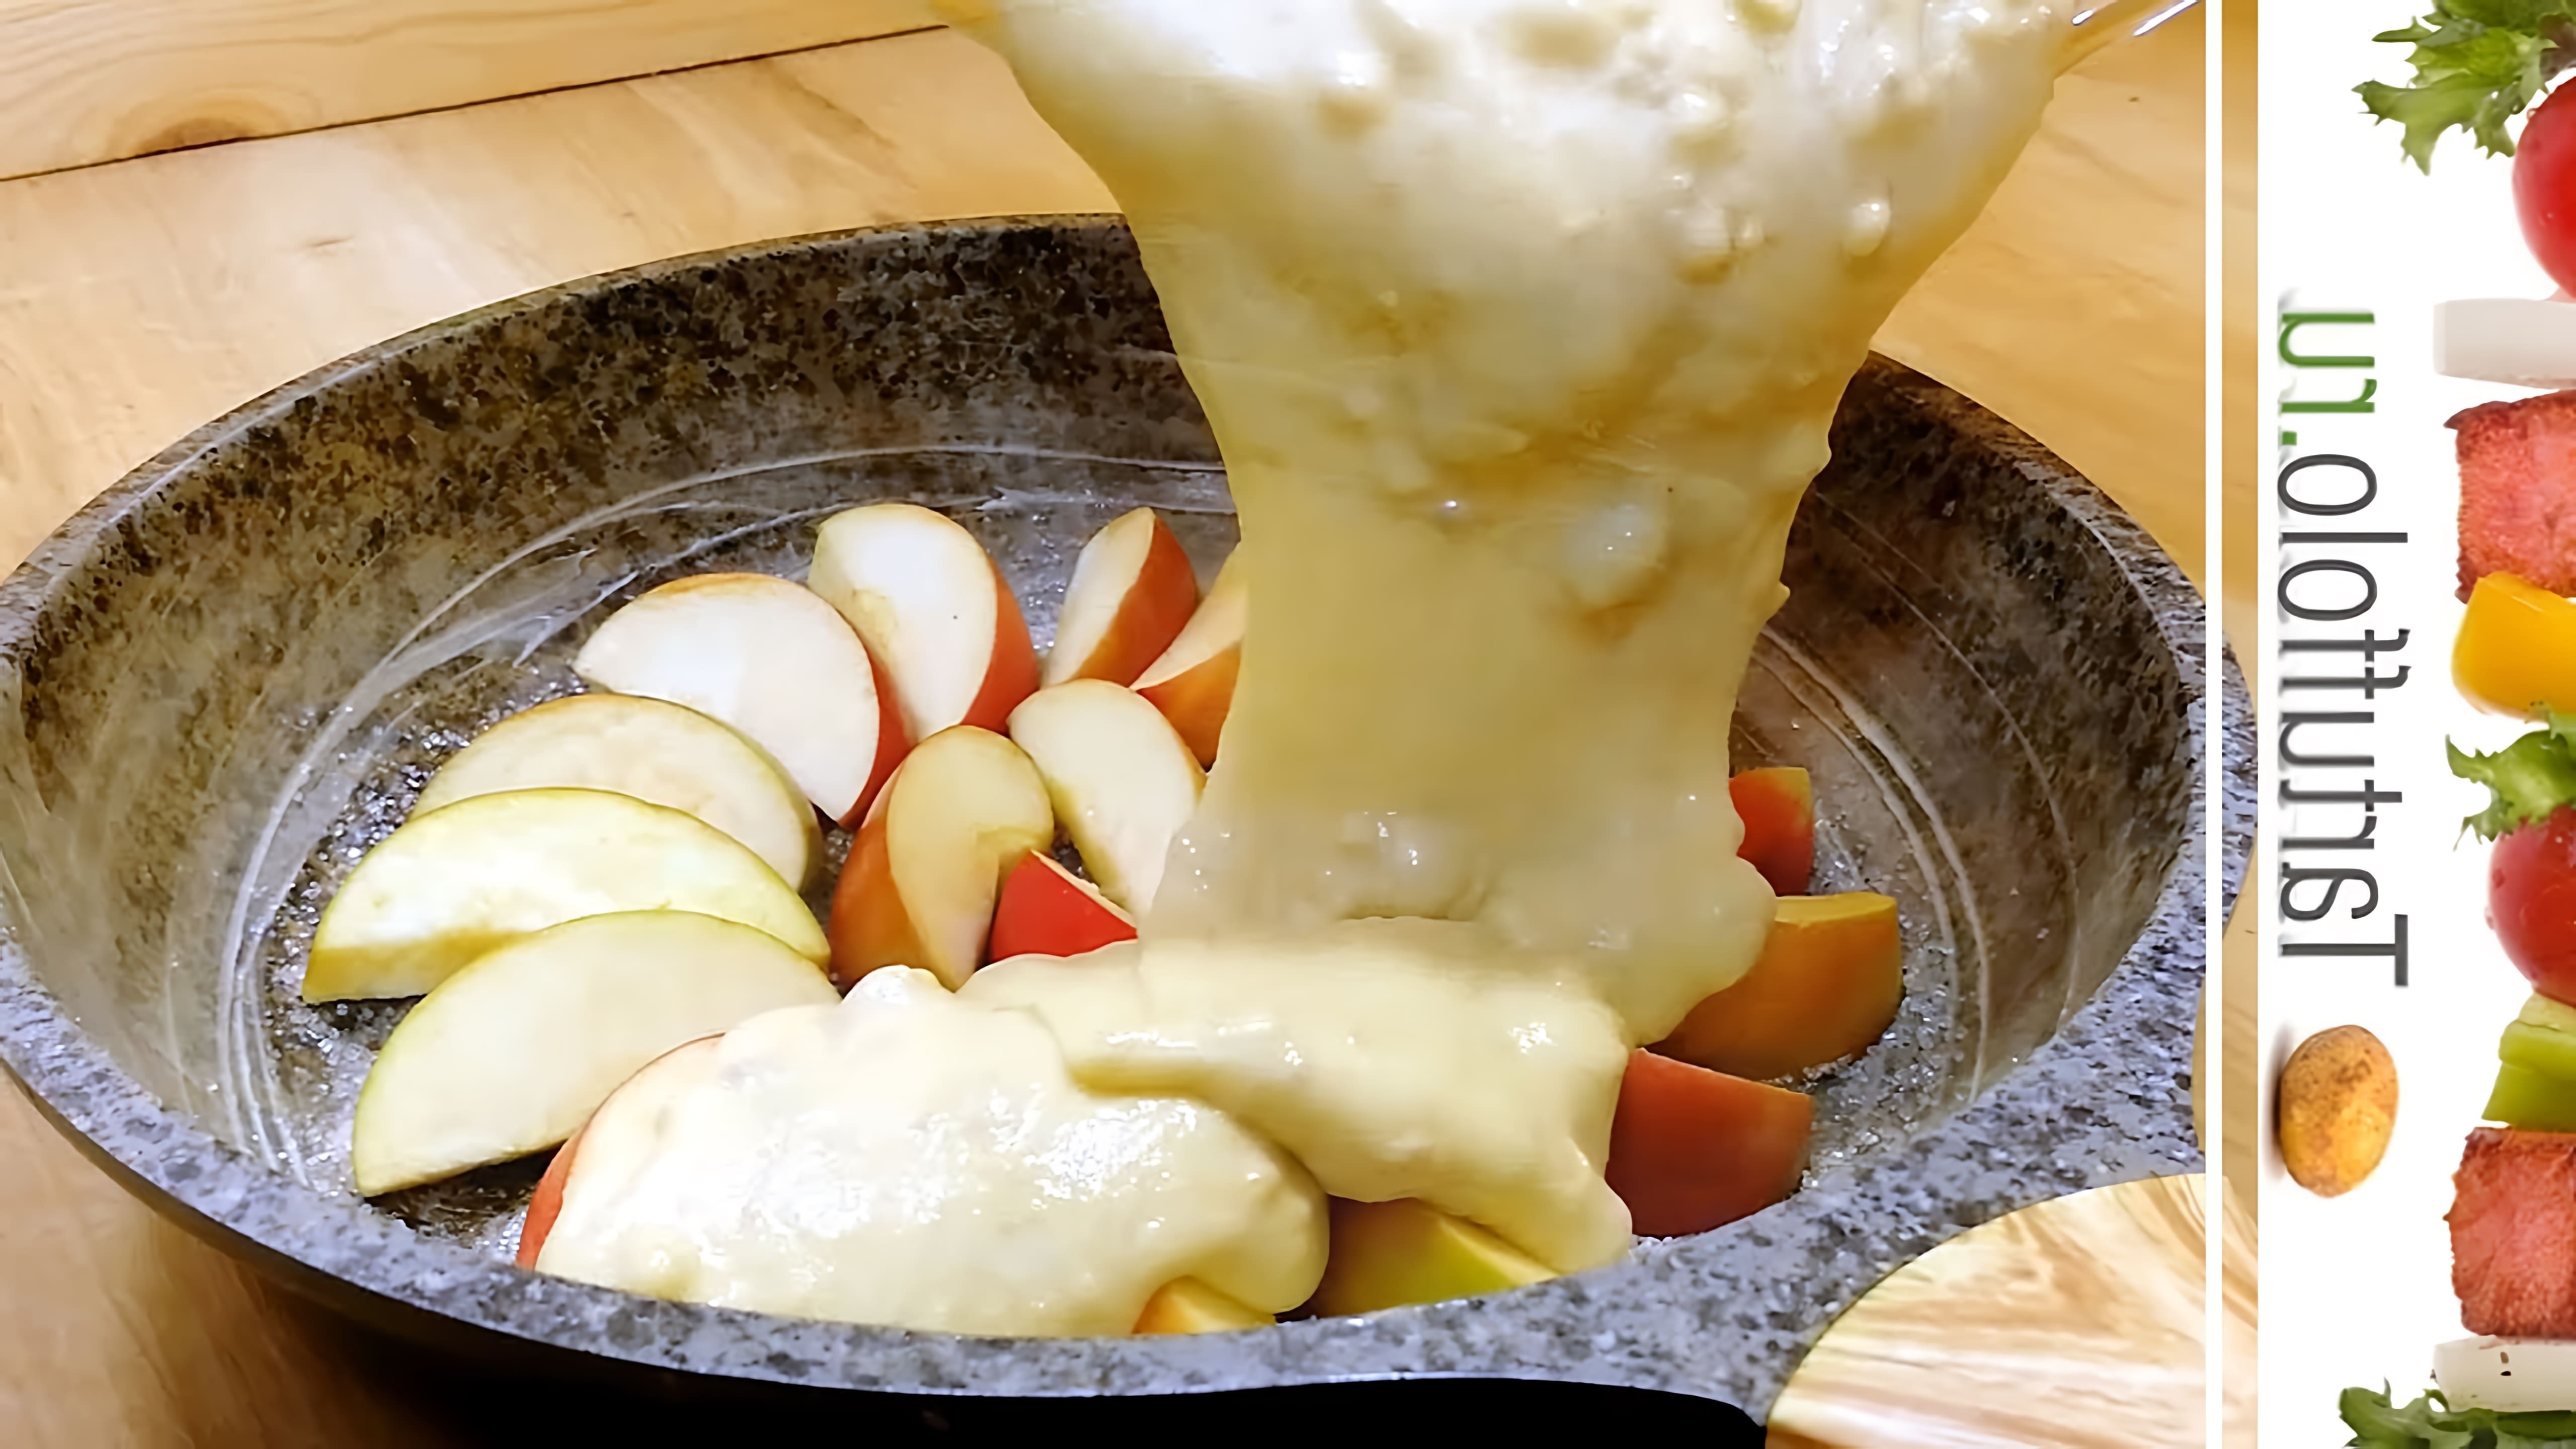 В этом видео демонстрируется процесс приготовления пирога на сковороде с яблоками